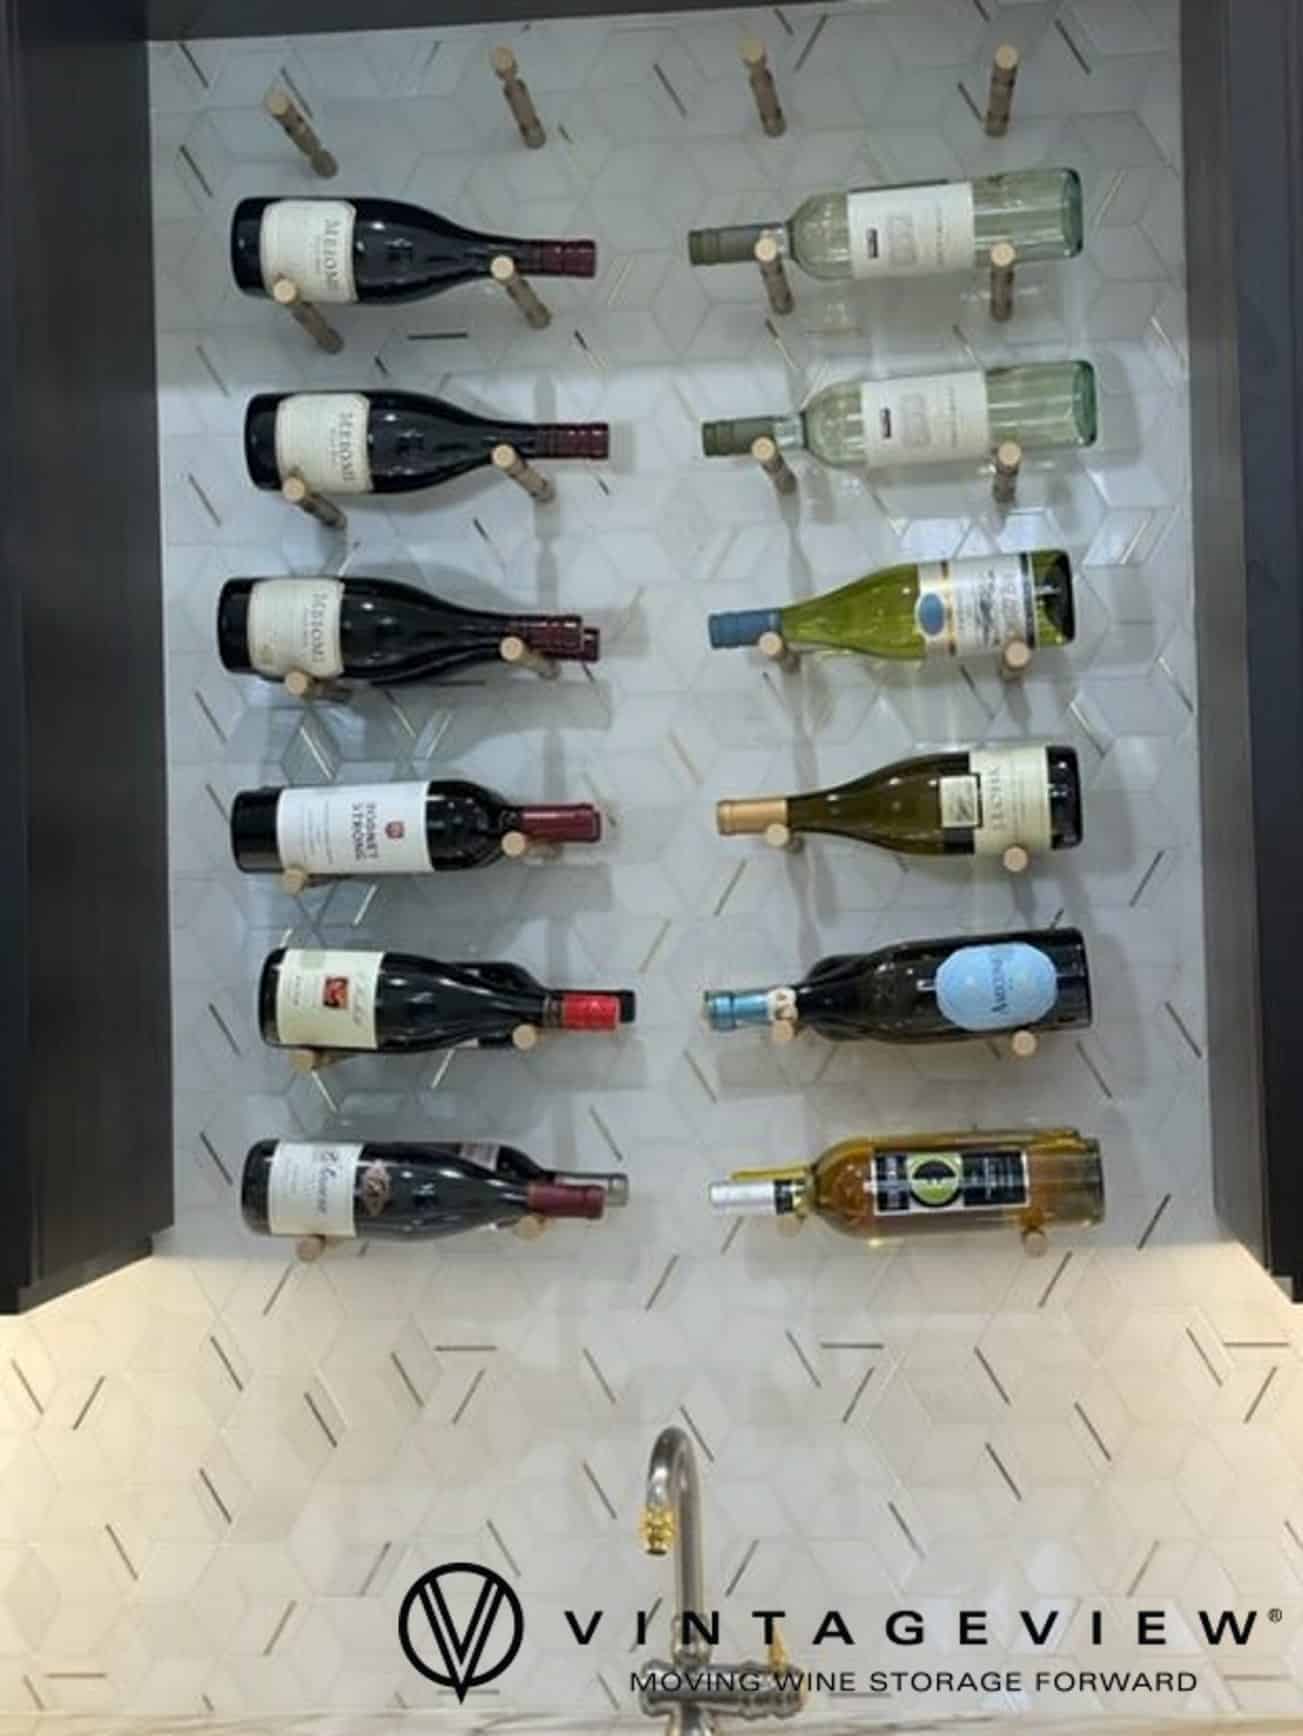 Luxurious Modern Wine Display with VintageView Vino Series Metal Wine Racks